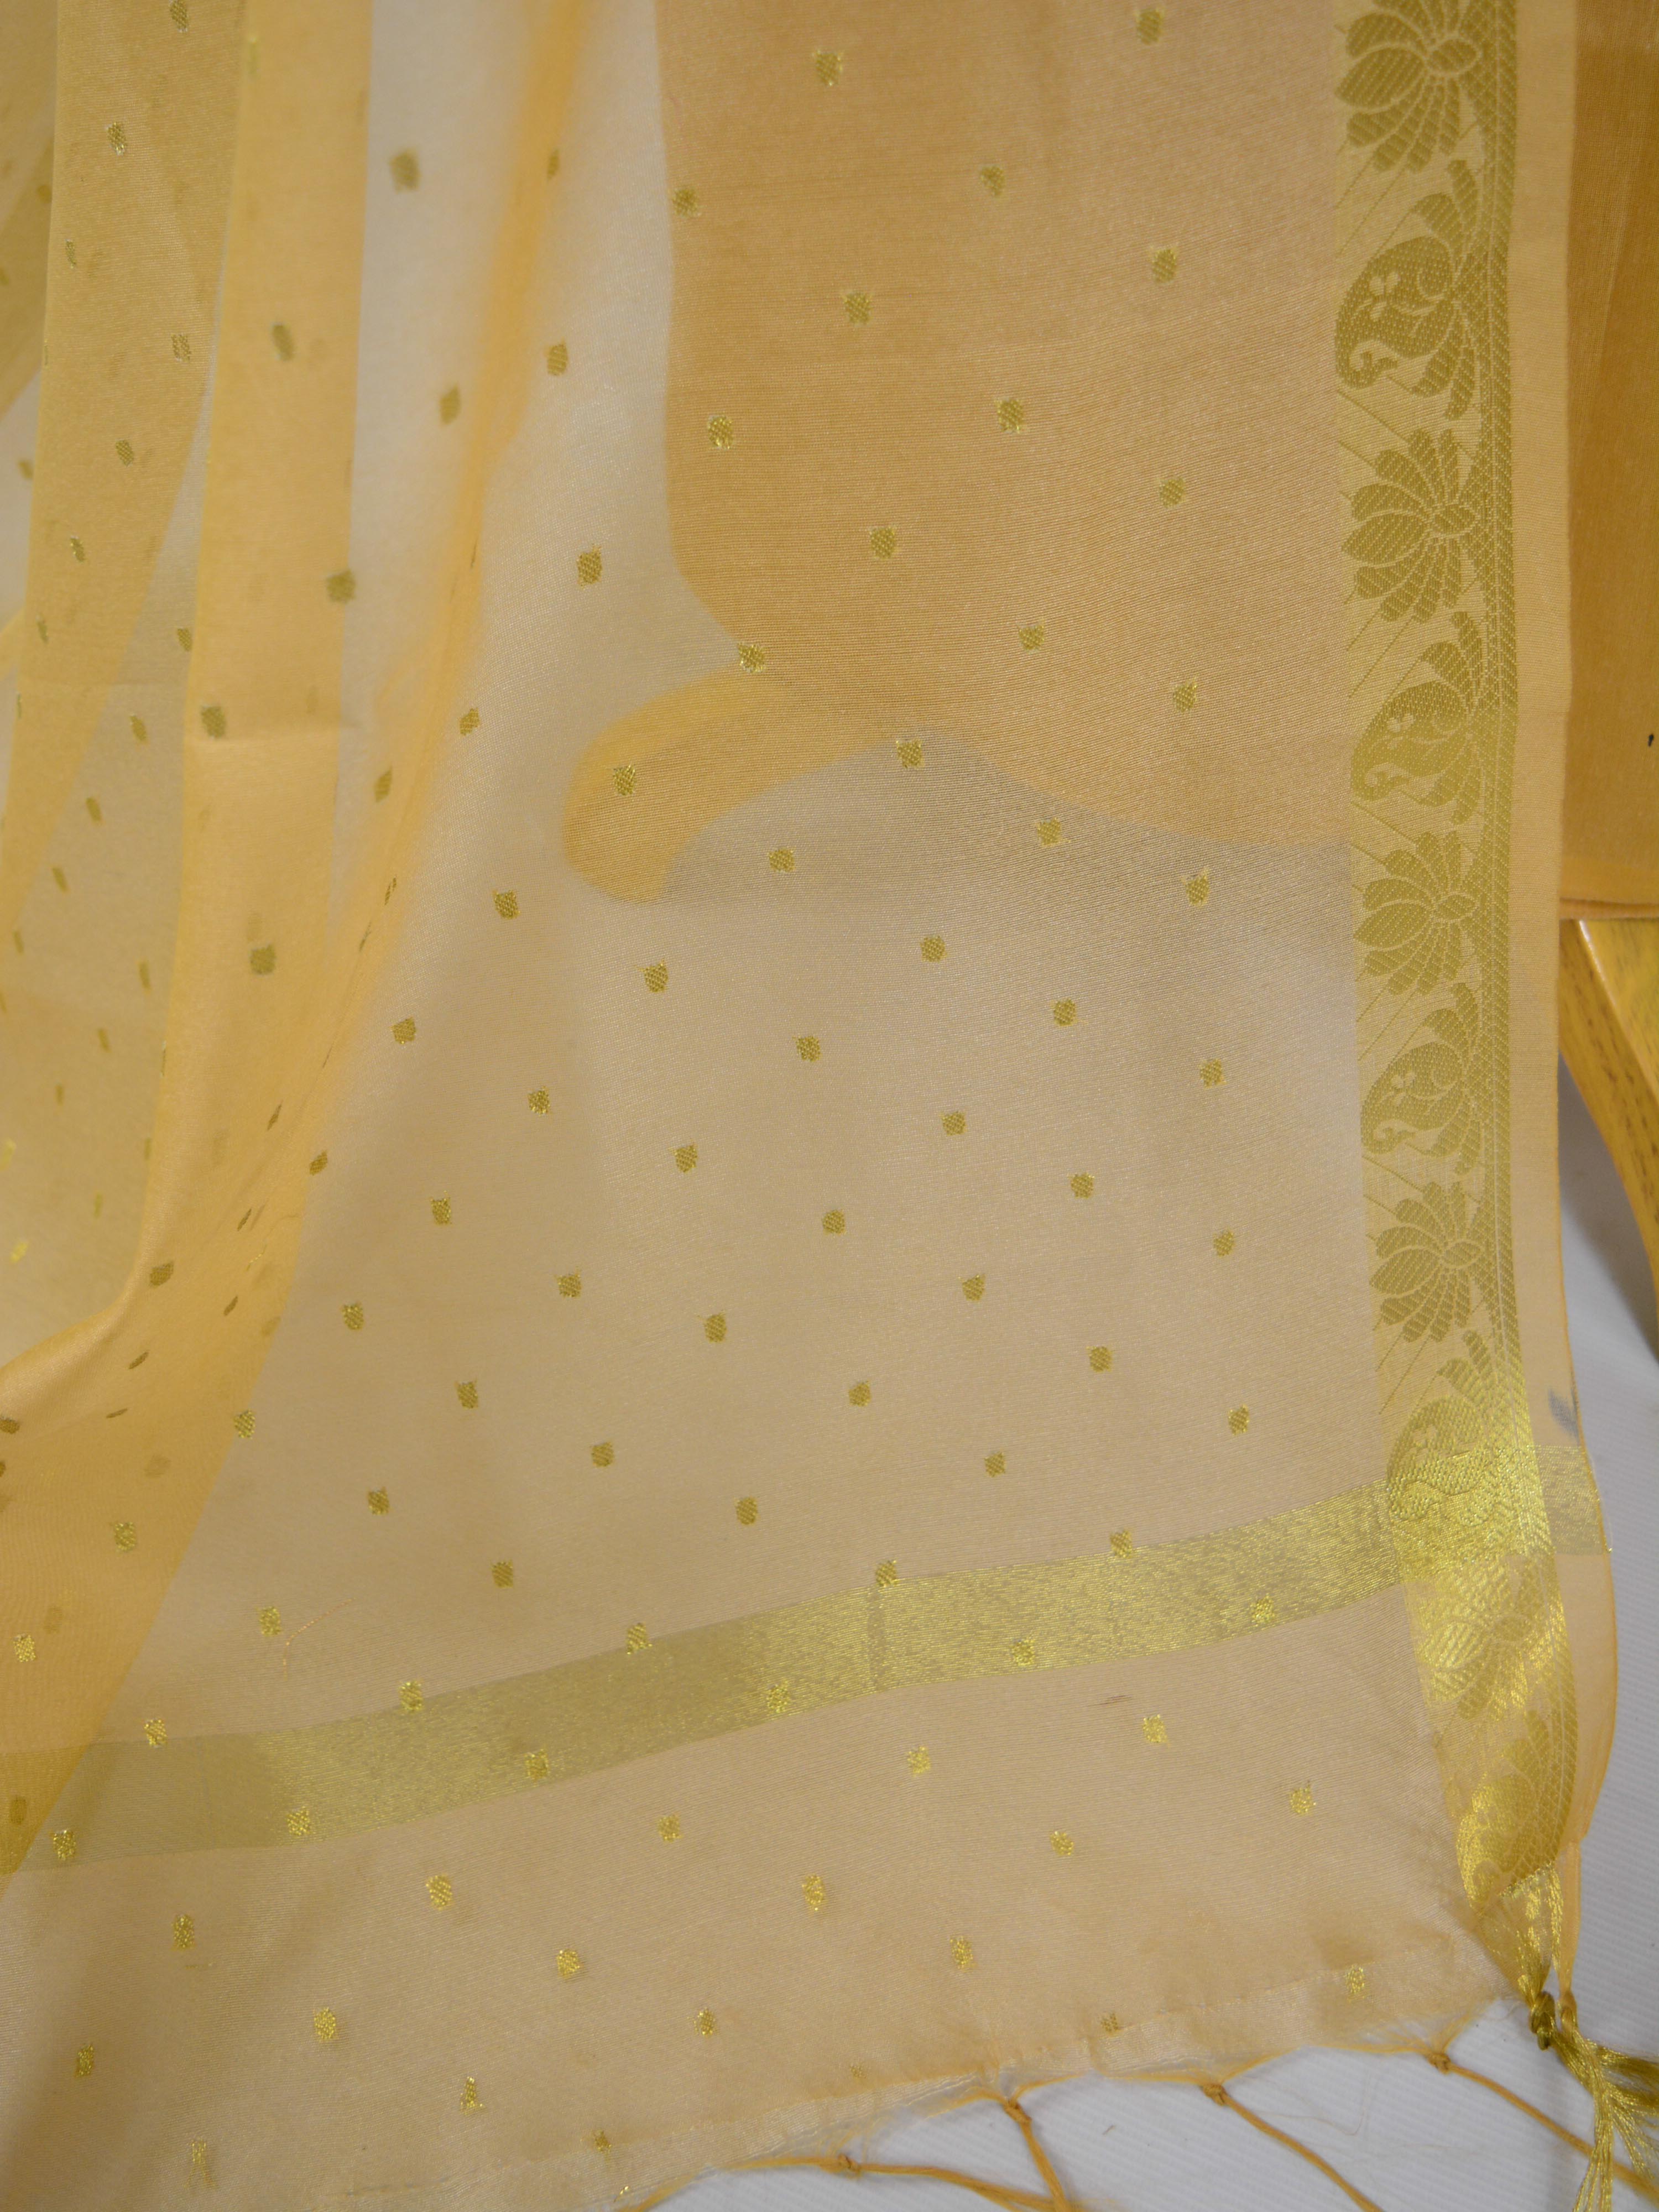 Banarasee Semi Silk Salwar Kameez Fabric With Gold Dupatta-Wine